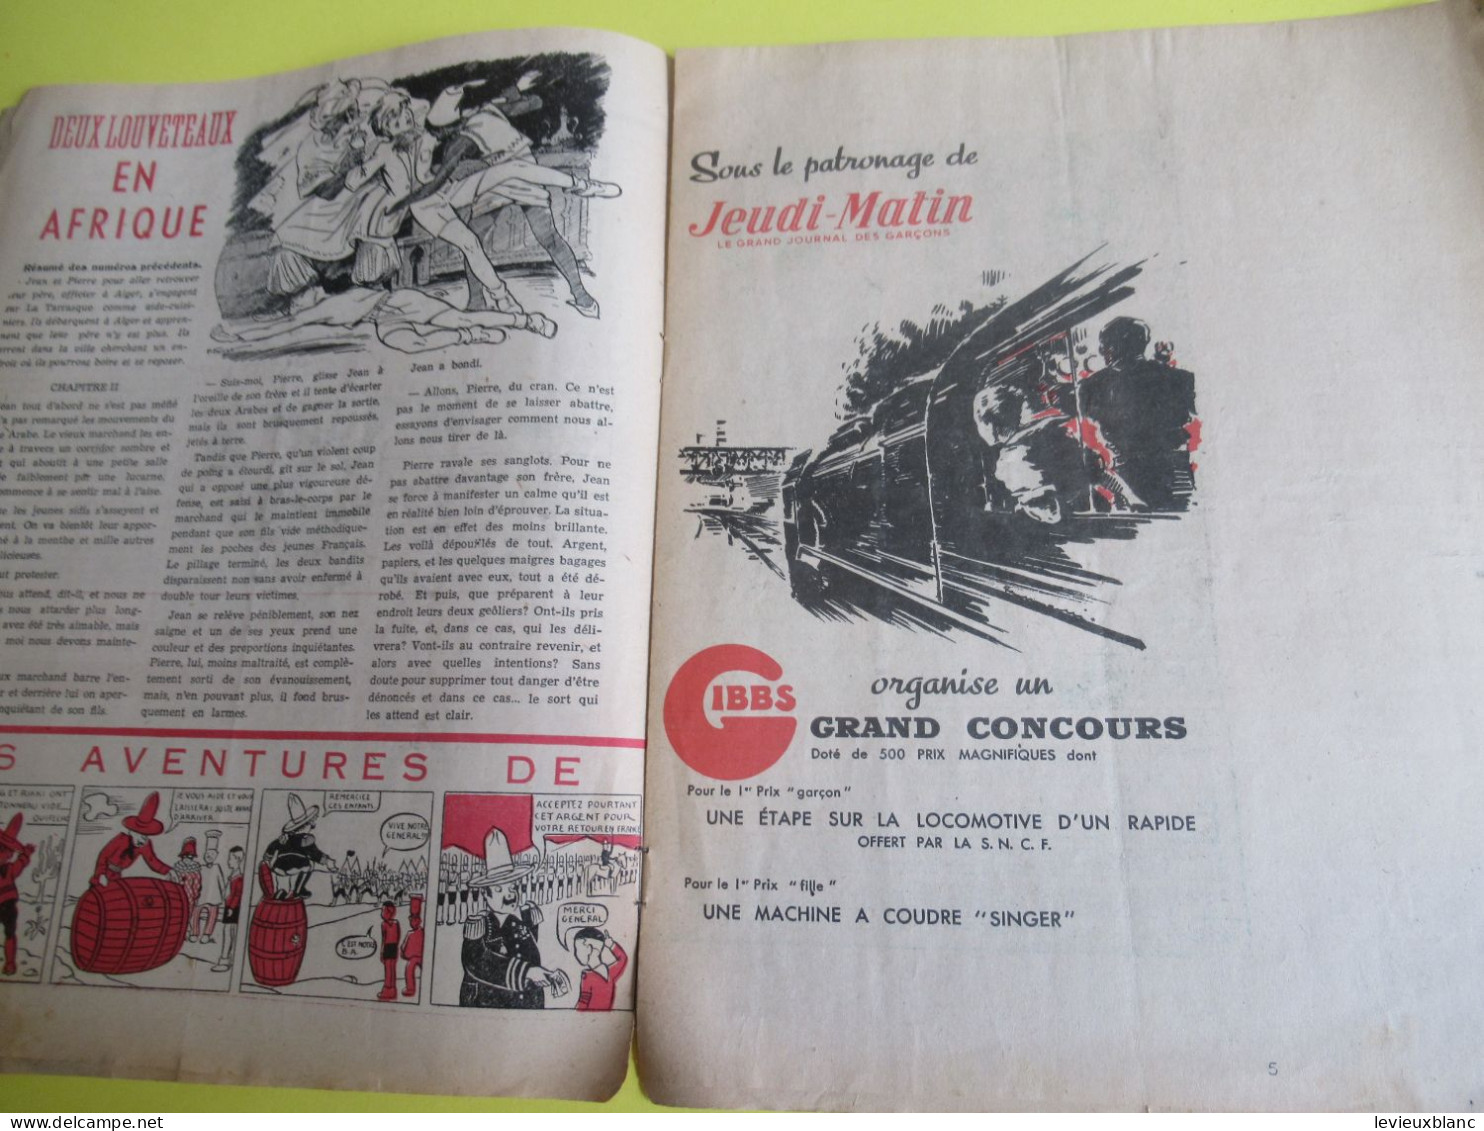 SCOUT de France/LOUVETEAU/Revue Bimensuelle/ N° 1- 2-3- 4- 5-7- 9-10- 11-12-13-14-19-20/1949-1950    VJ146